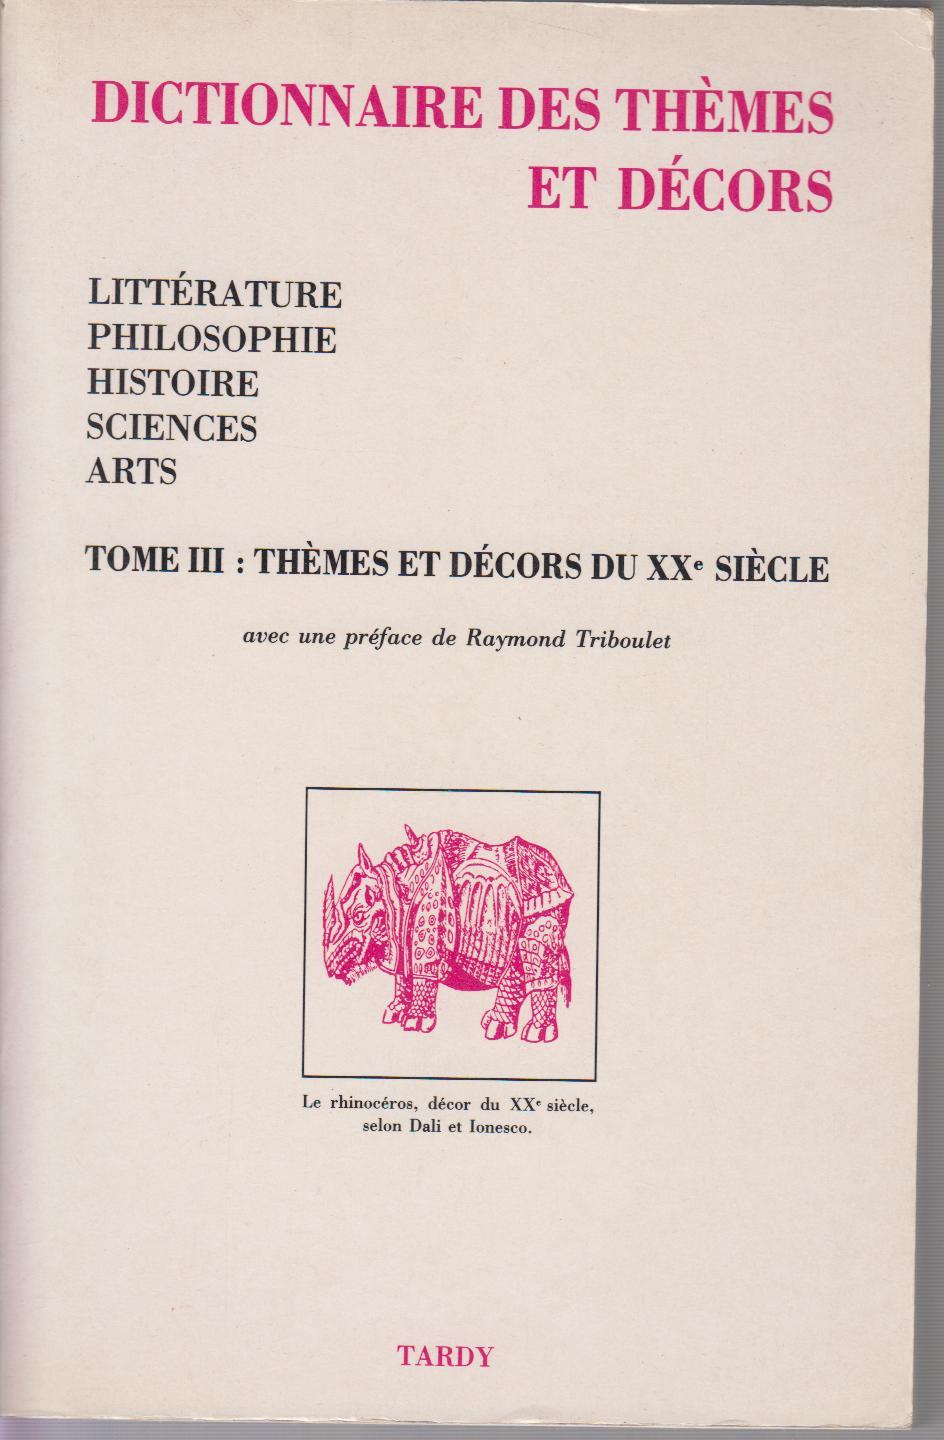 Dictionnaire des themes et decors - Tome III - Litterature, philosophie, histoire, sciences, arts - Themes et decors du XX° siecle